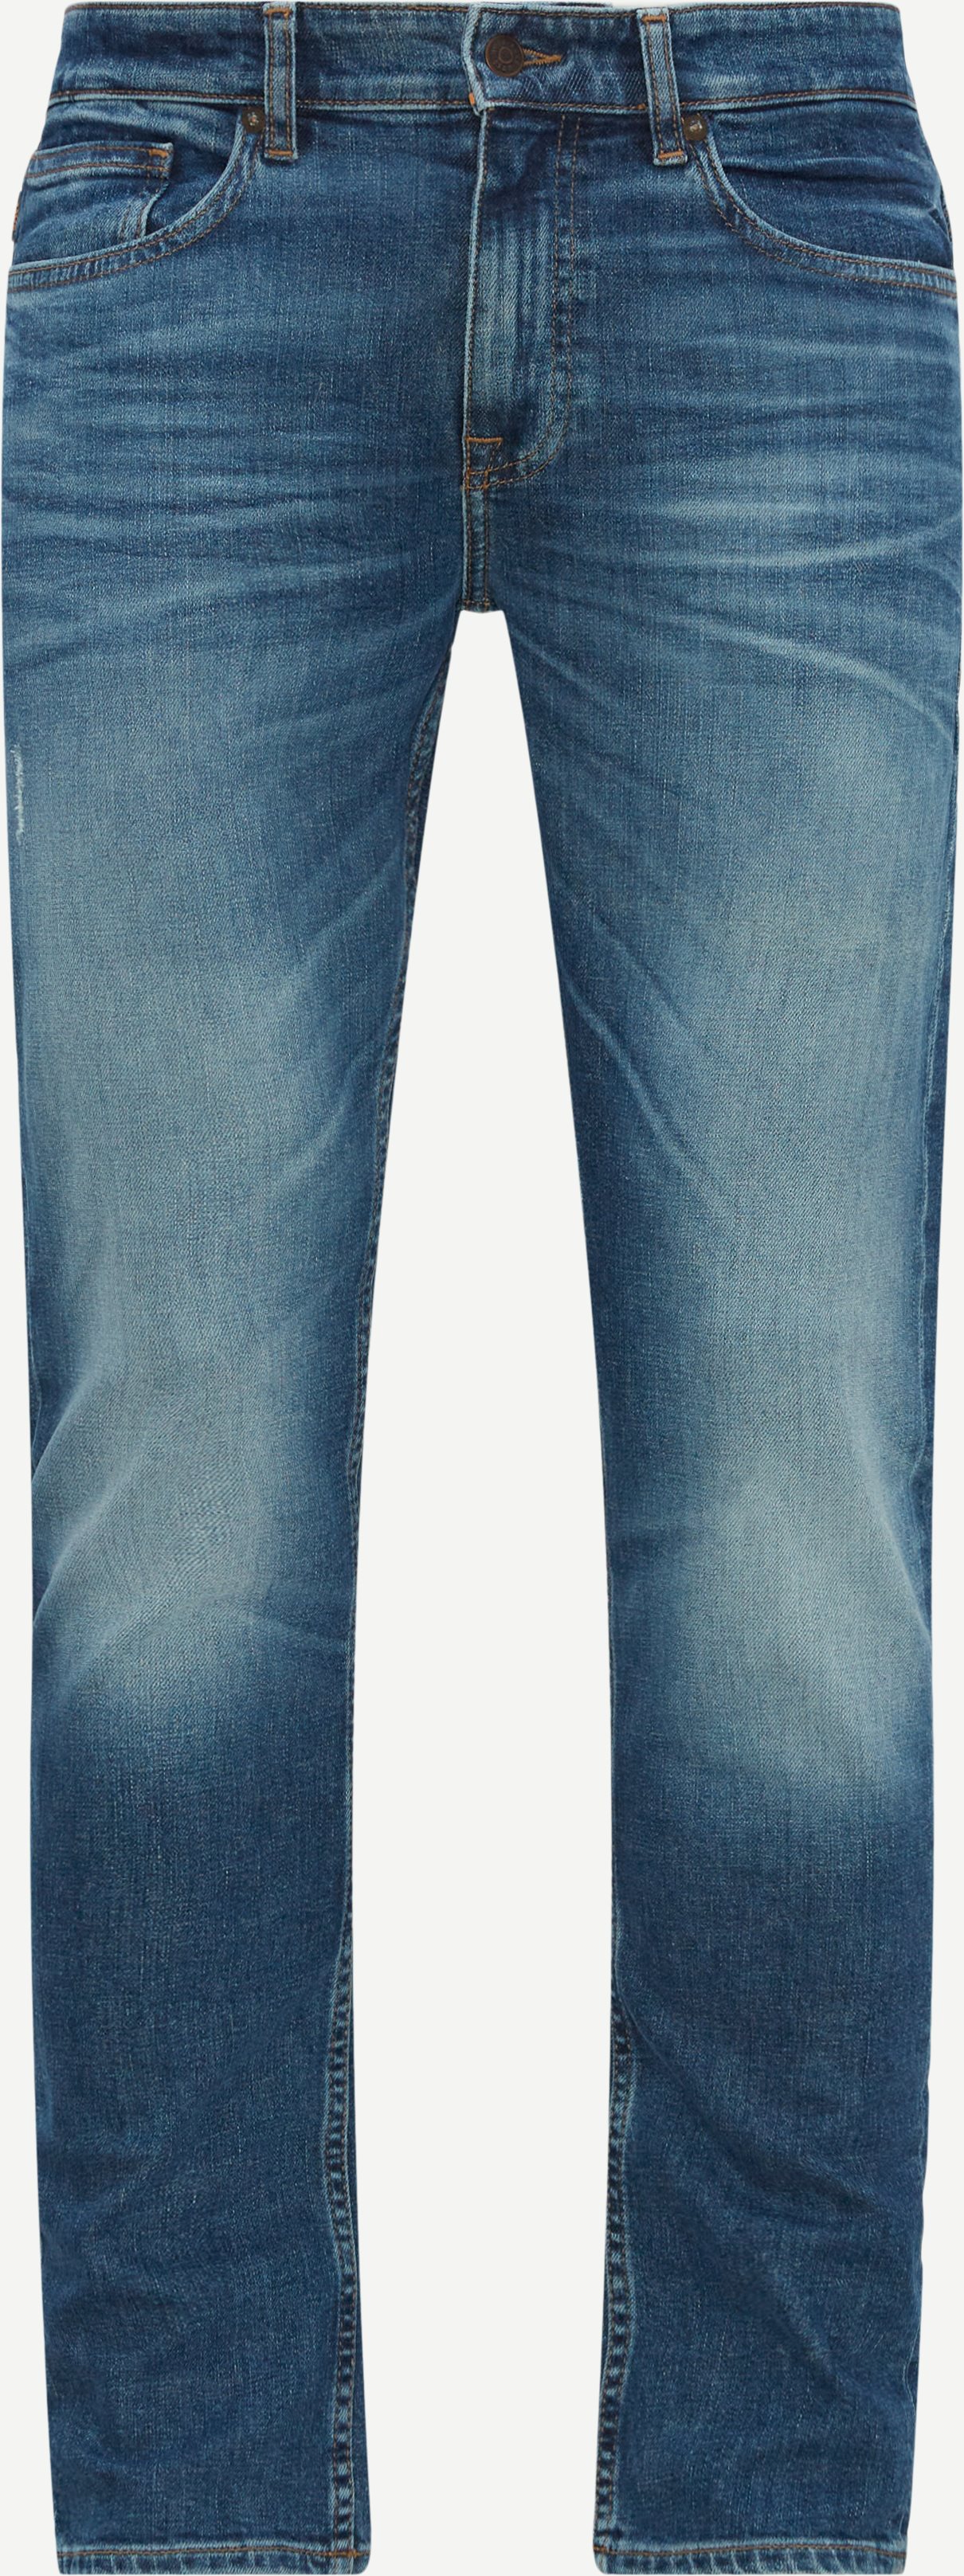 BOSS Casual Jeans 50501101 DELAWARE BC-C Denim